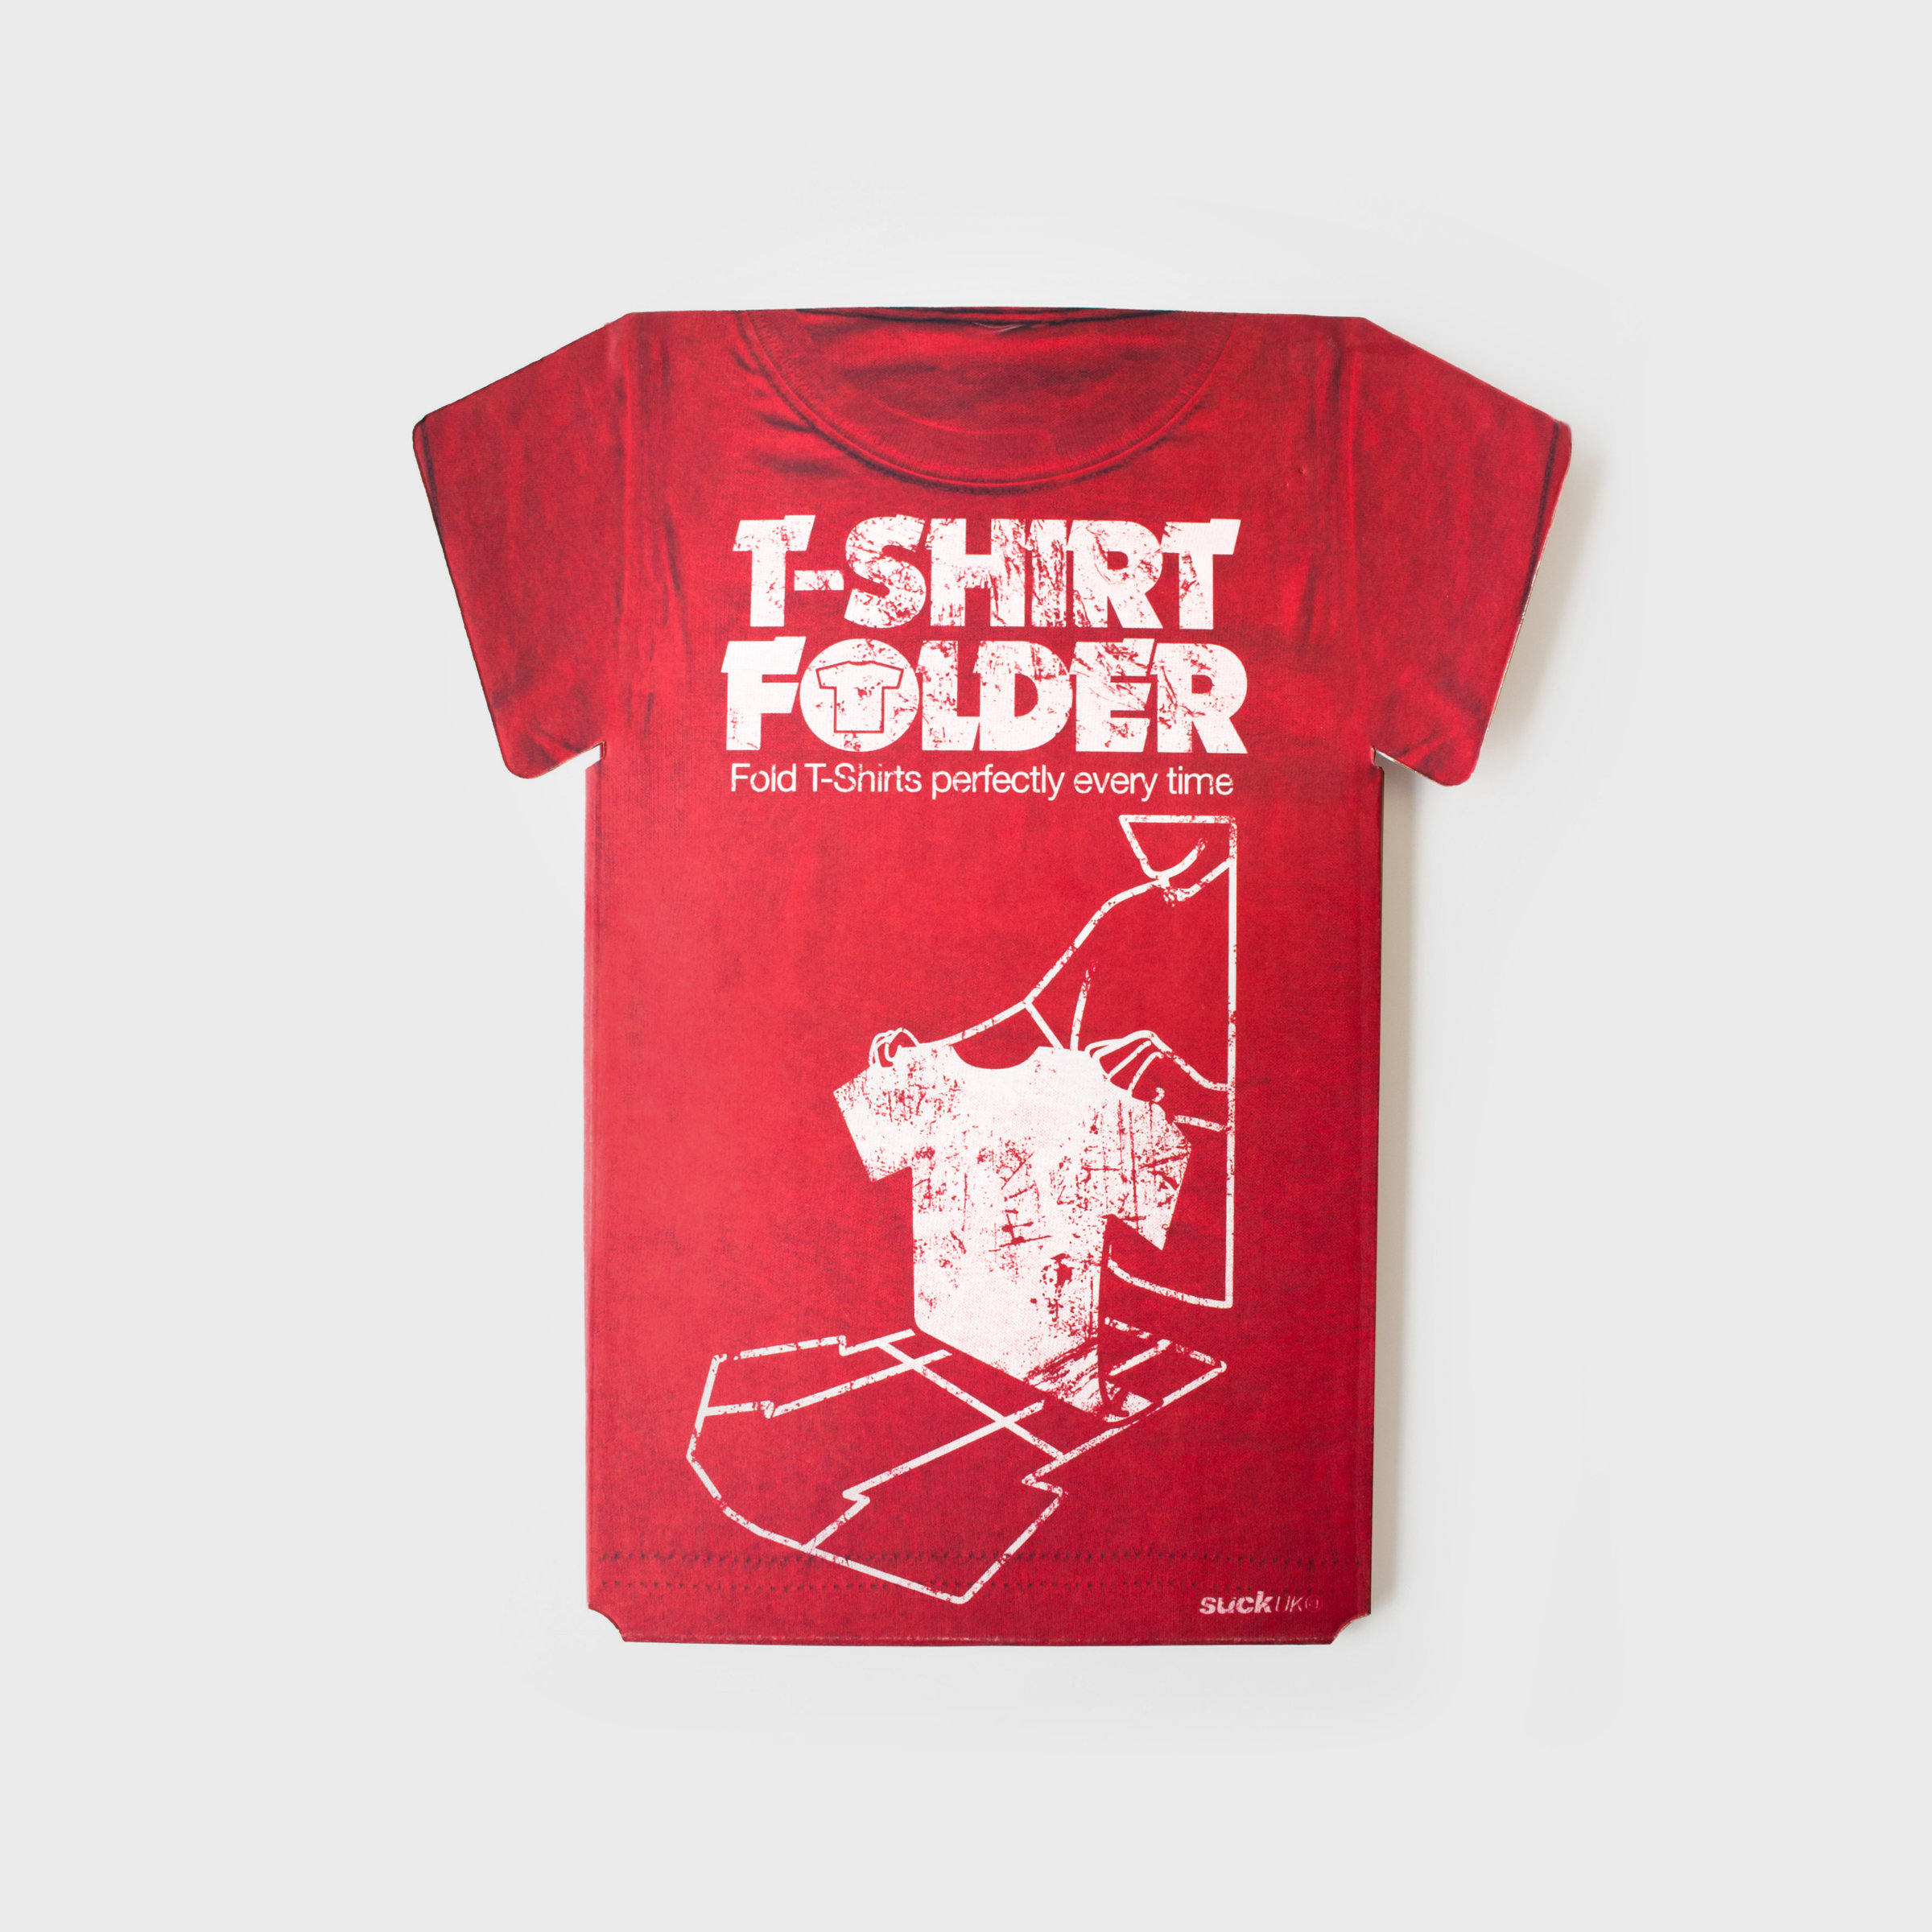 T-Shirt Folder